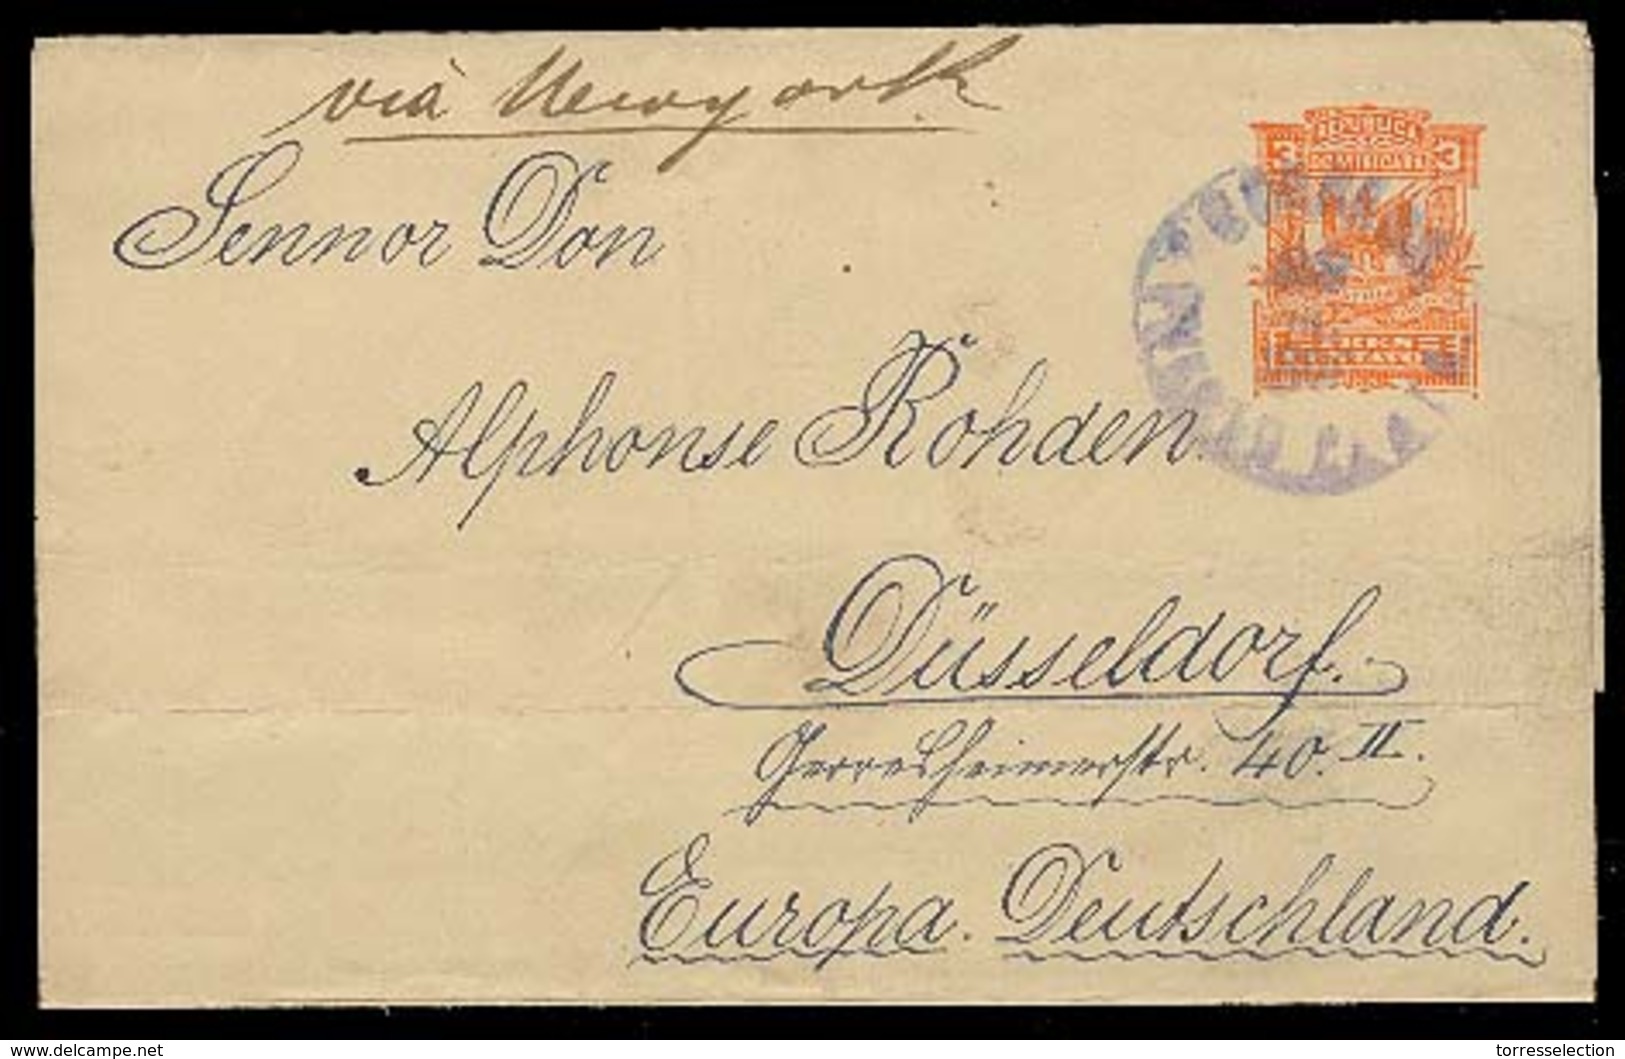 DOMINICAN REP. 1890. P. Plata - Germany. 3c Orange Stat Wrapper Complete Used. Scarce. - República Dominicana